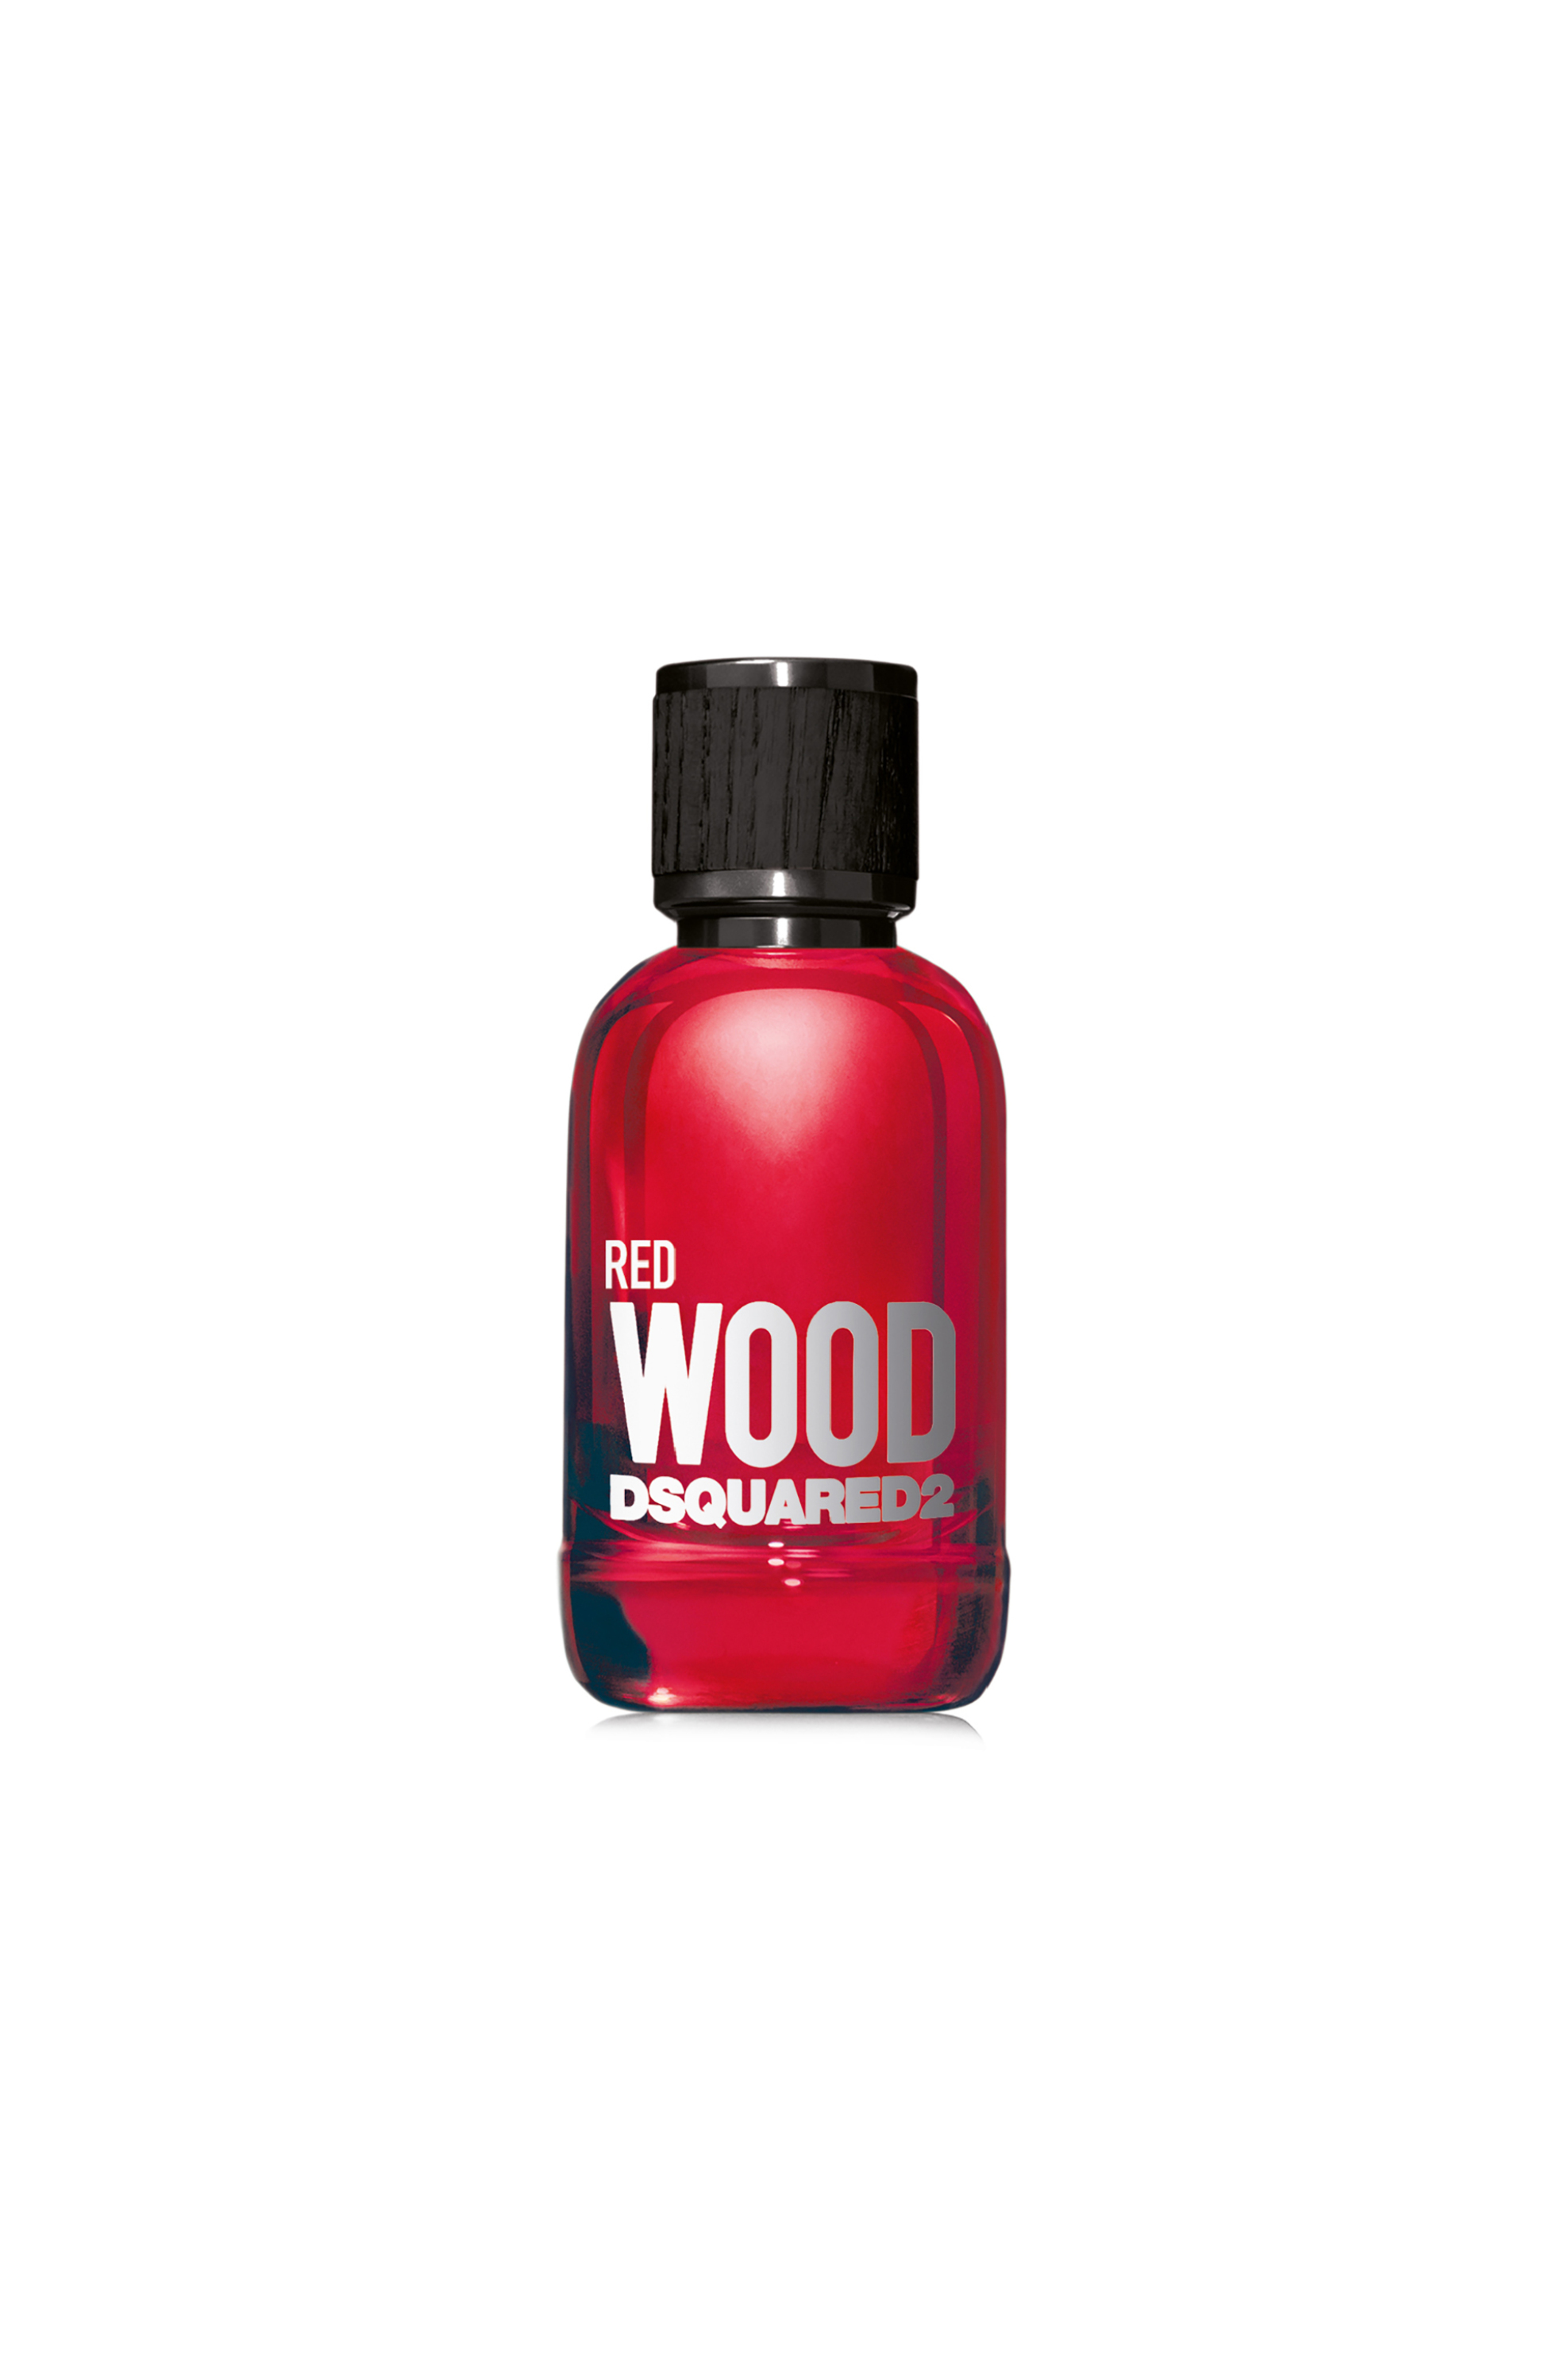 Dsquared2 Wood Red Pour Femme Eau De Toilette Natural Spray - 5C28 1054867